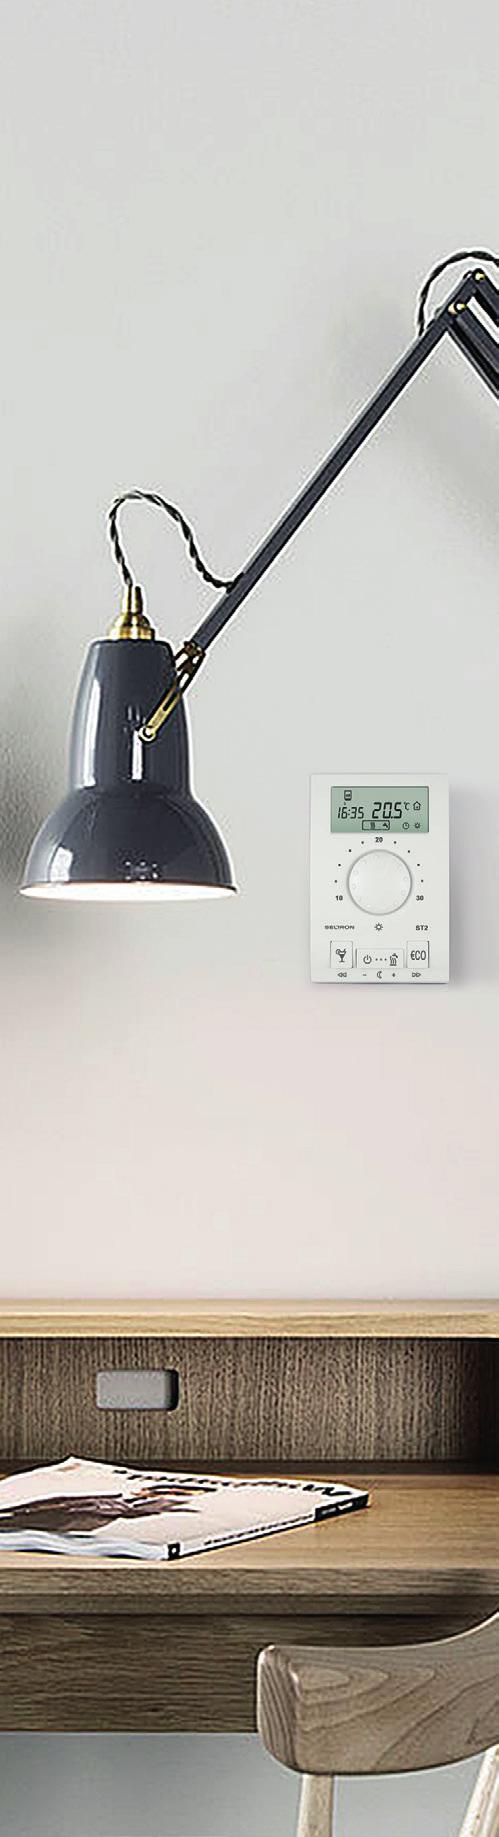 Regulatorji ogrevanja SELTRON Uporabniku prijazno delovanje Preprosta korekcija sobne temperature Sobno temperaturo lahko na sobnem termostatu korigirate z gumbom, v območju od 0 do 30 C.